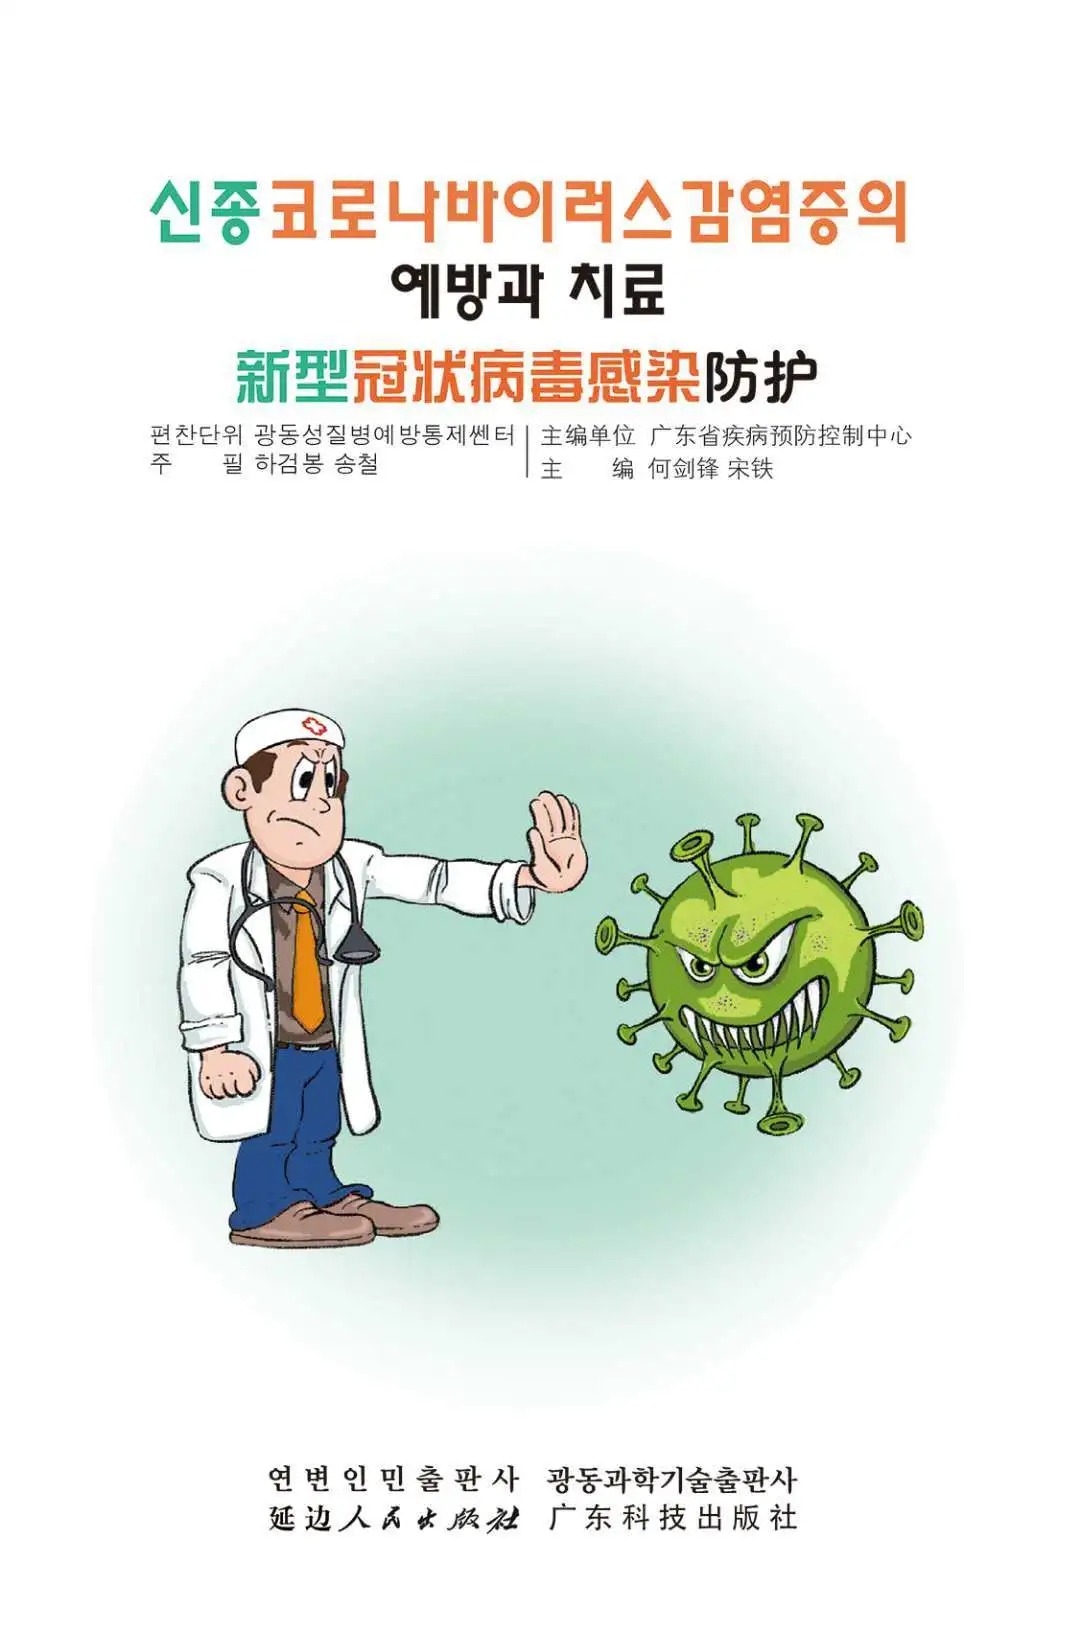 《新型冠状病毒感染防护》（朝鲜文汉文双语版）